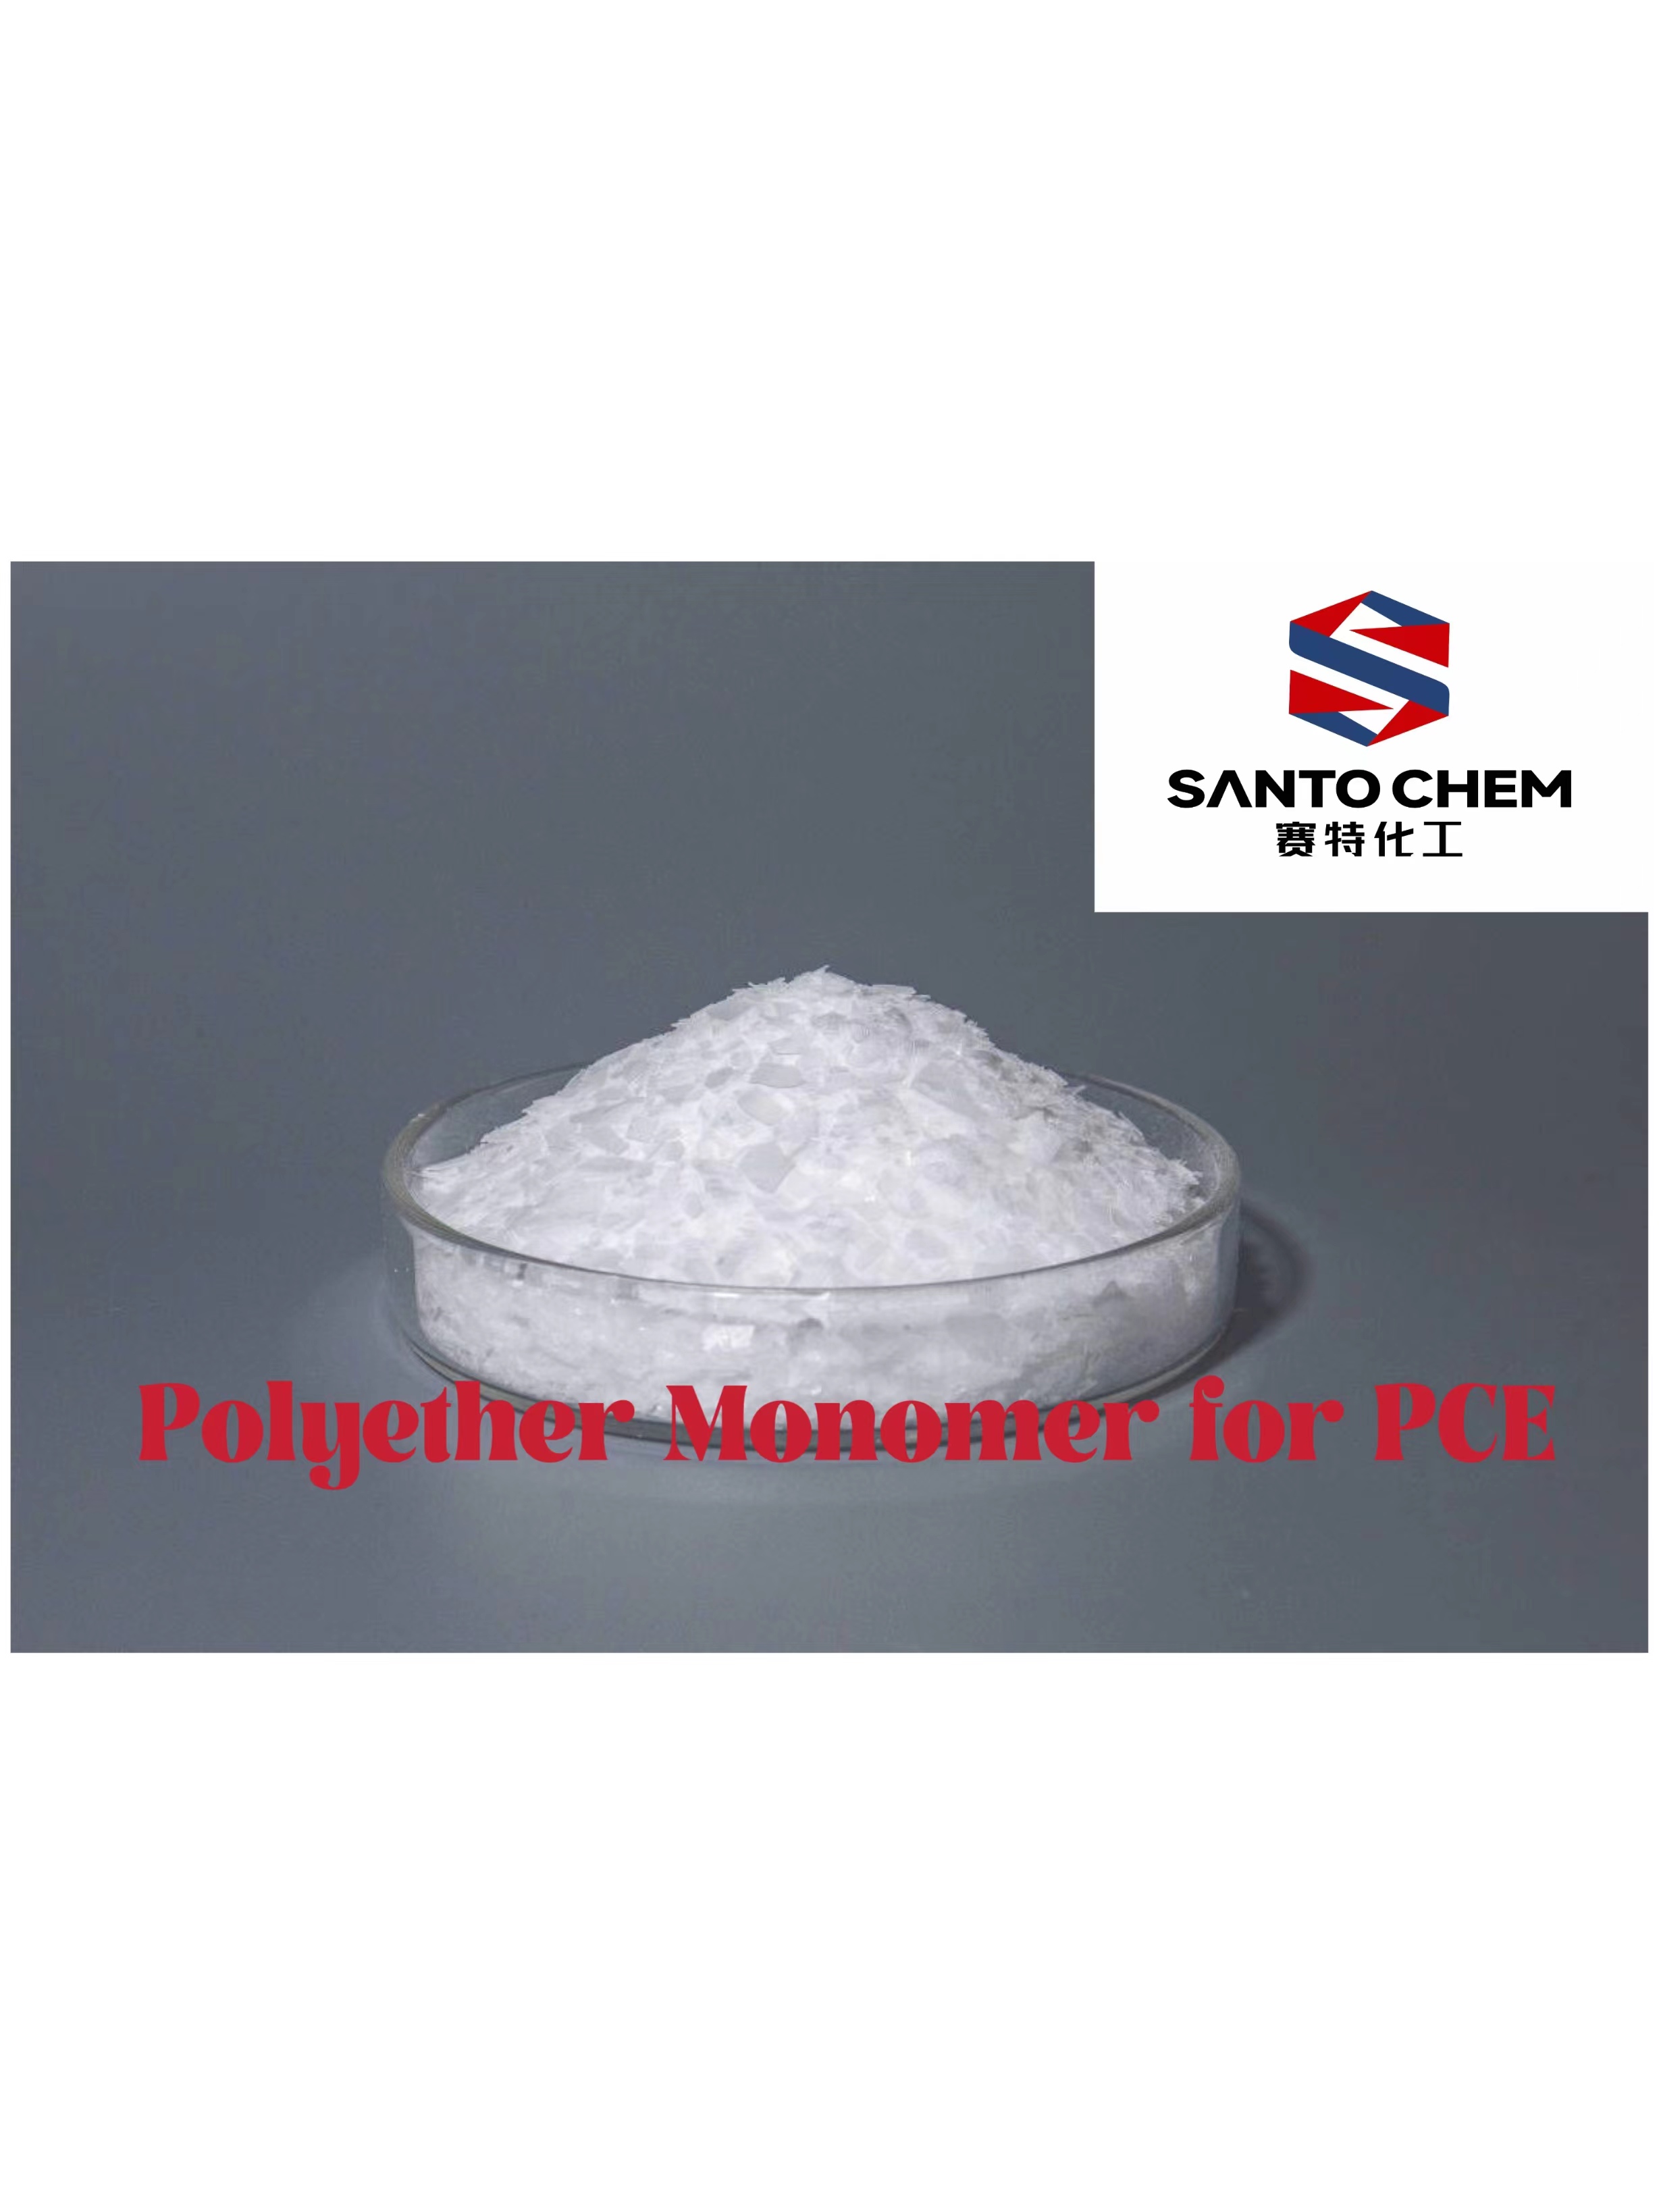 Monomer bahan mentah PCE yang tinggi